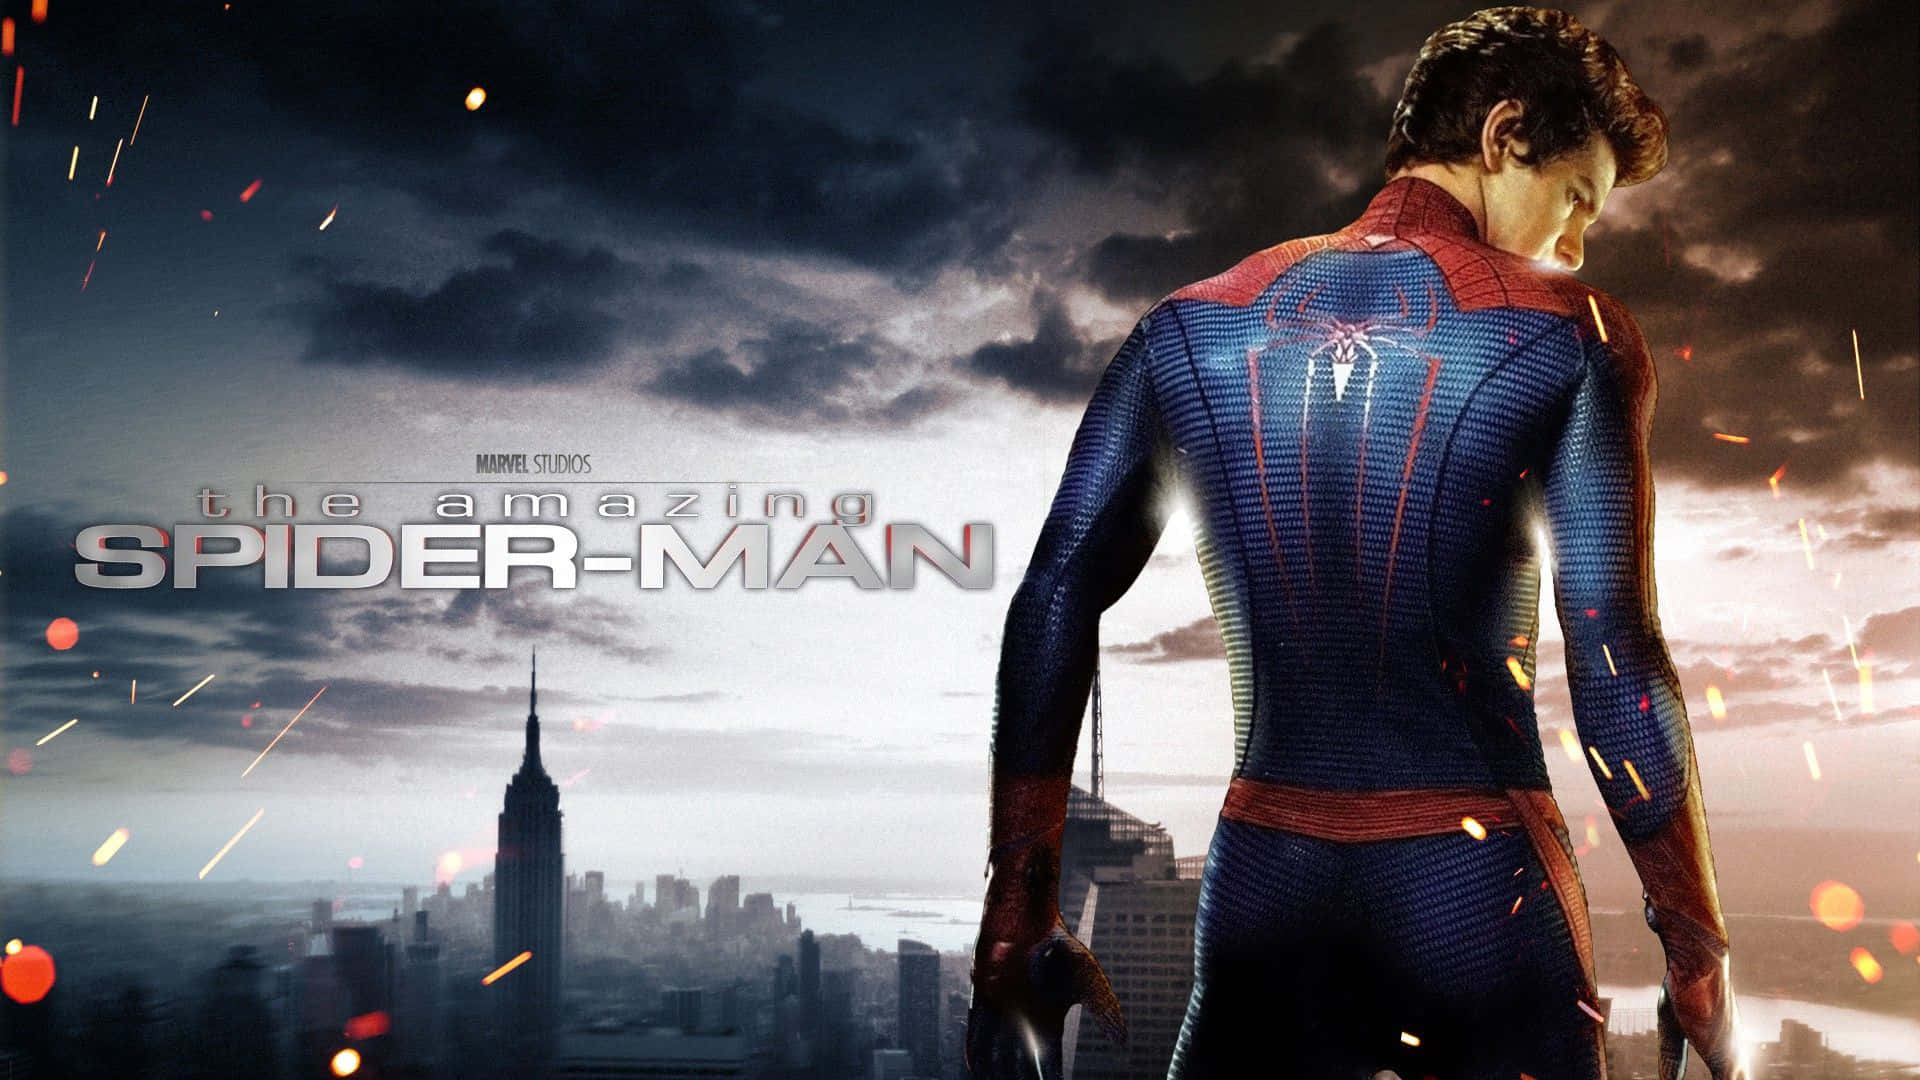 Ilposter Del Film The Amazing Spider-man